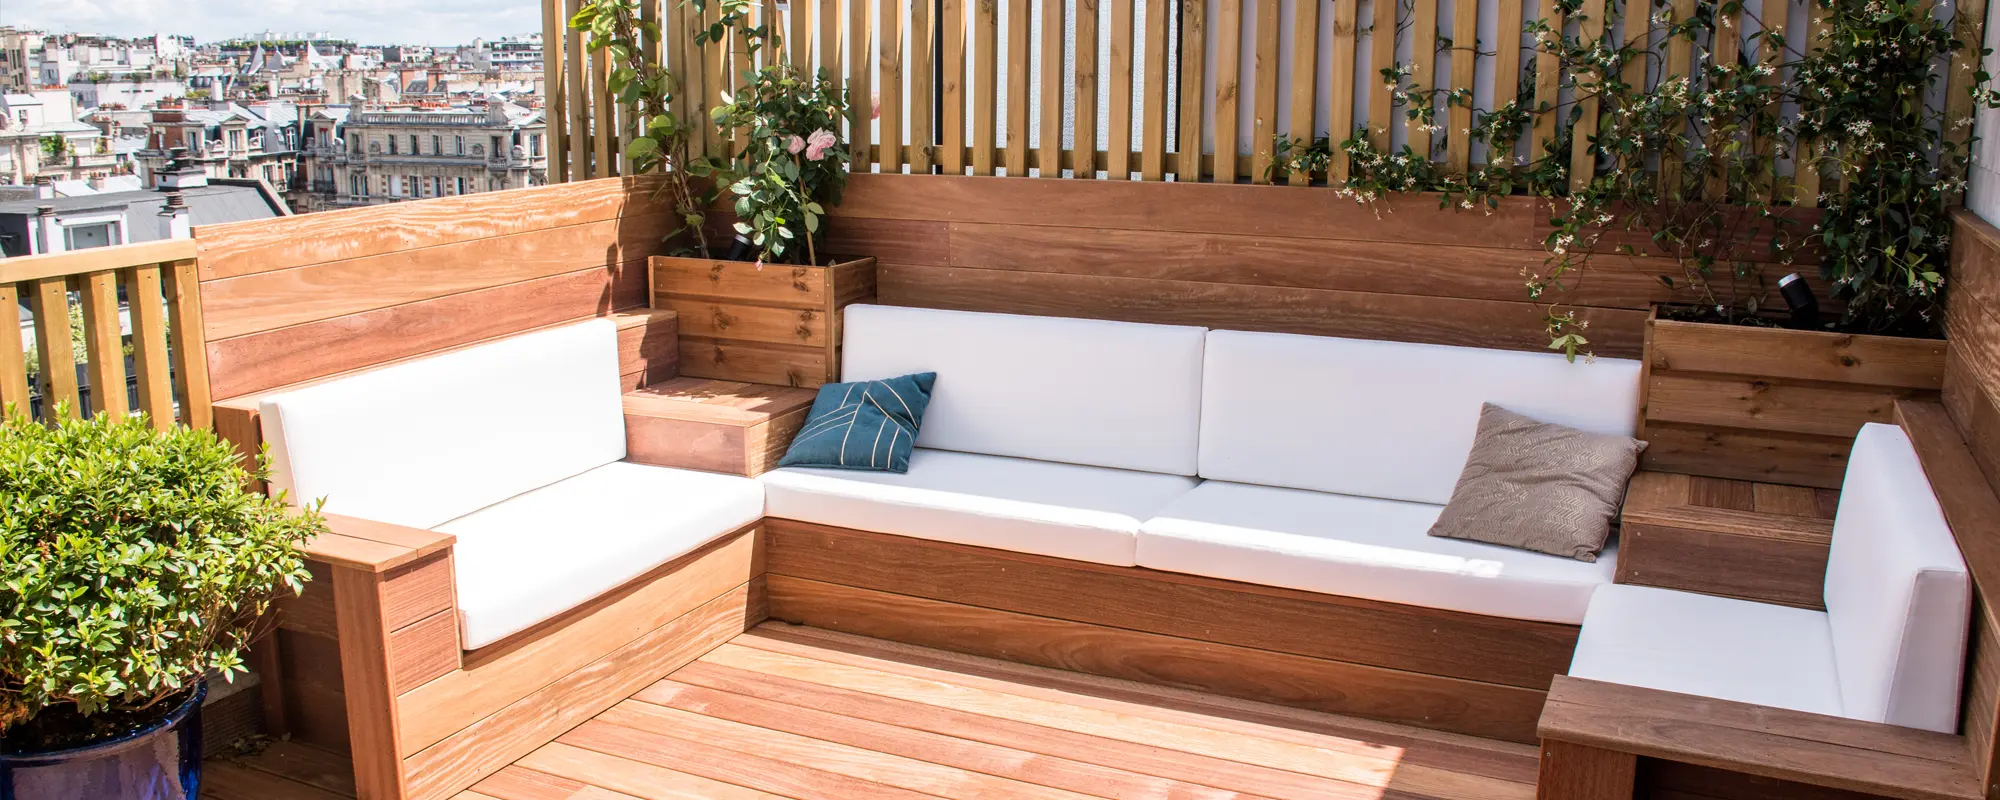 Terrasse Lounge sur les toits de Paris - Sol en bois exotique avec canapé extérieur sur mesure